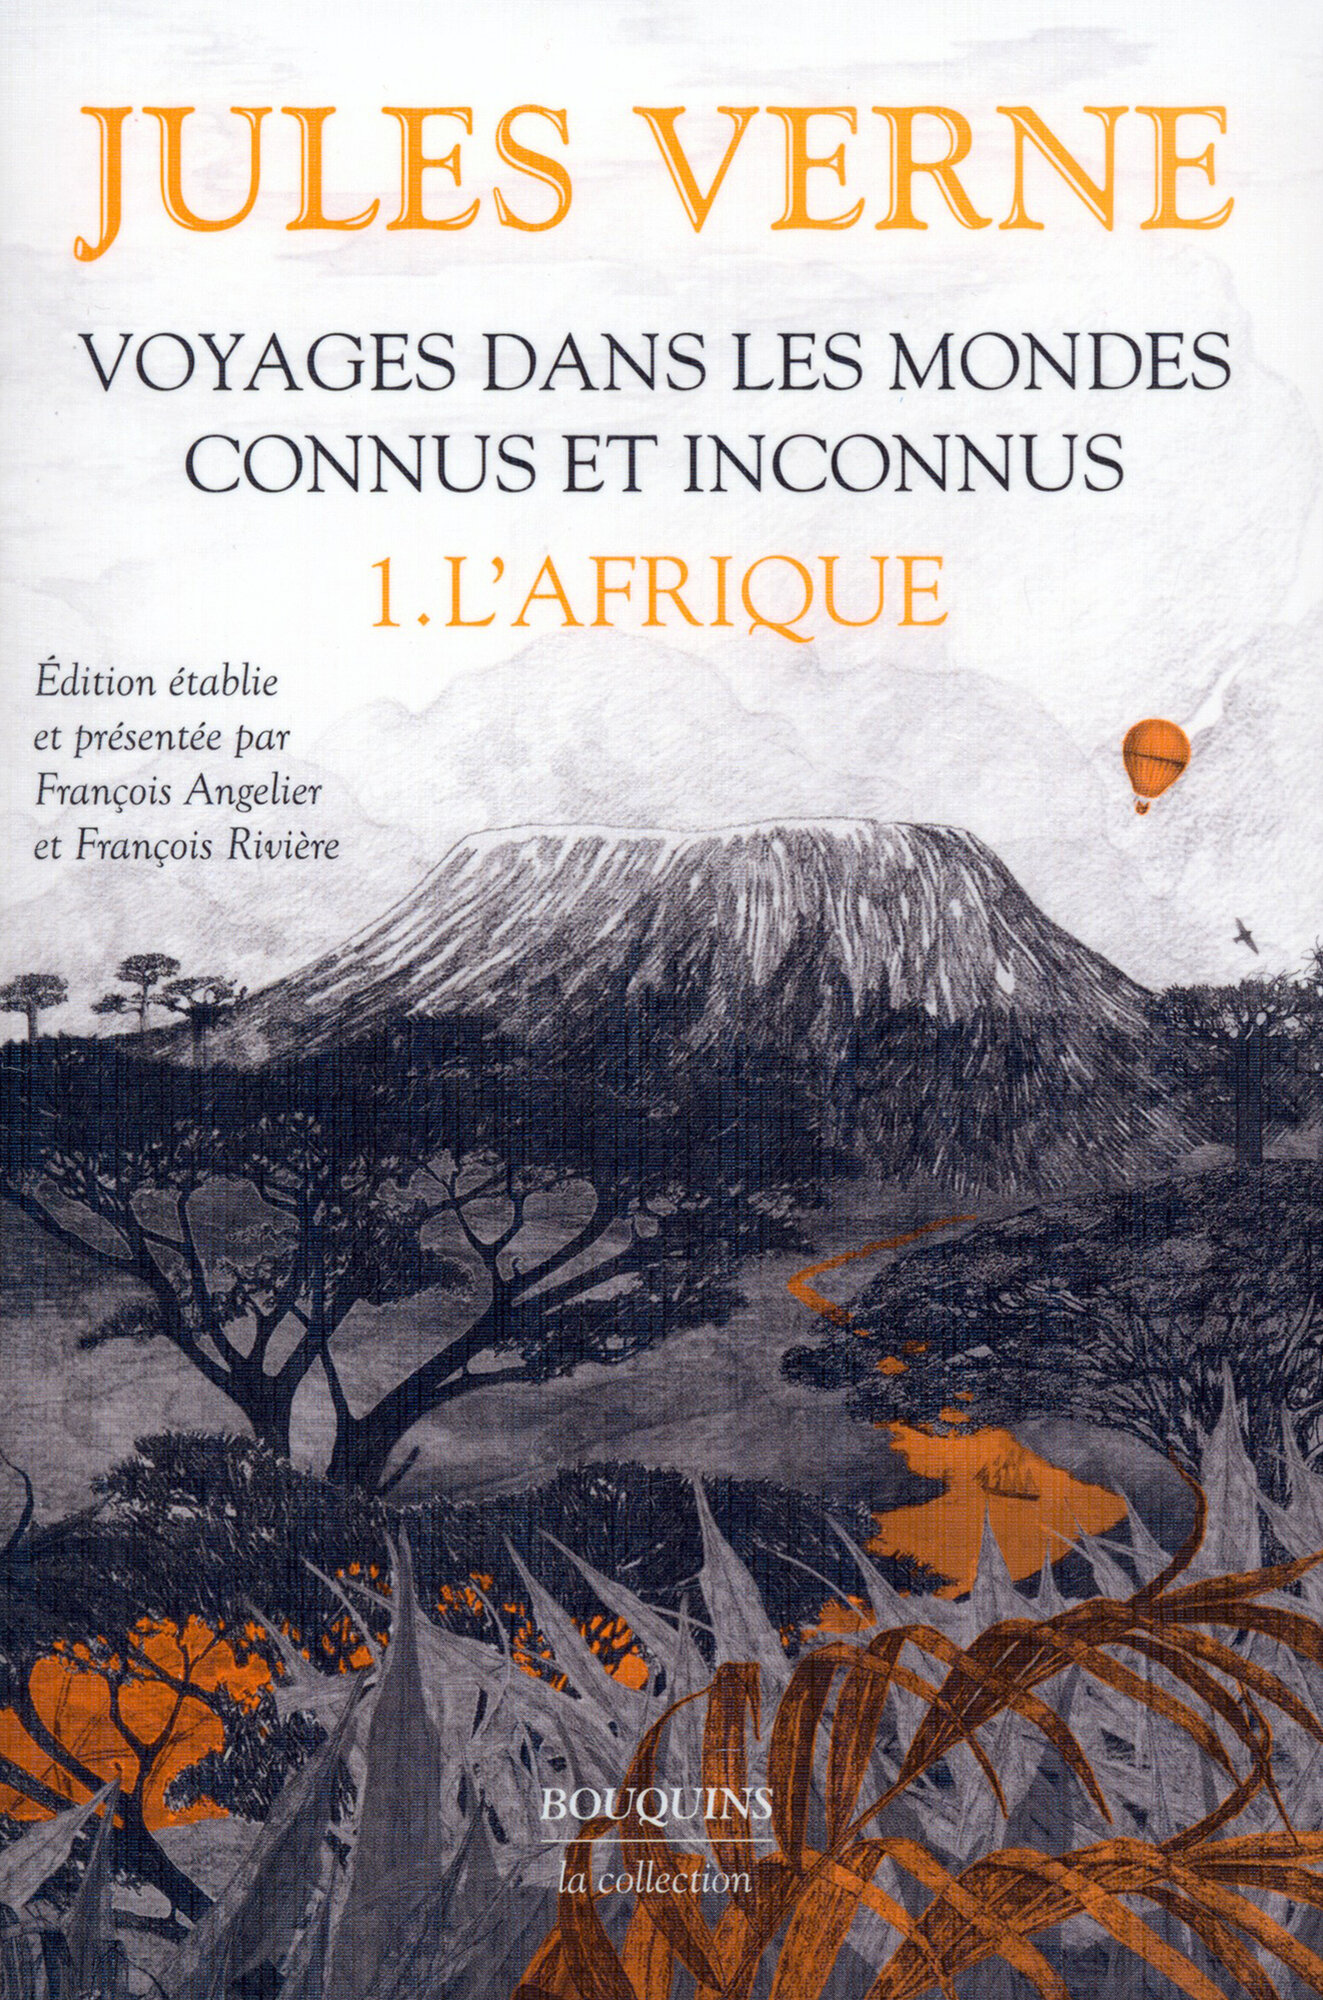 Voyages dans les mondes connus et inconnus. Tome 1. L'Afrique / Verne Jules / Книга на Французском / Верн Жюль